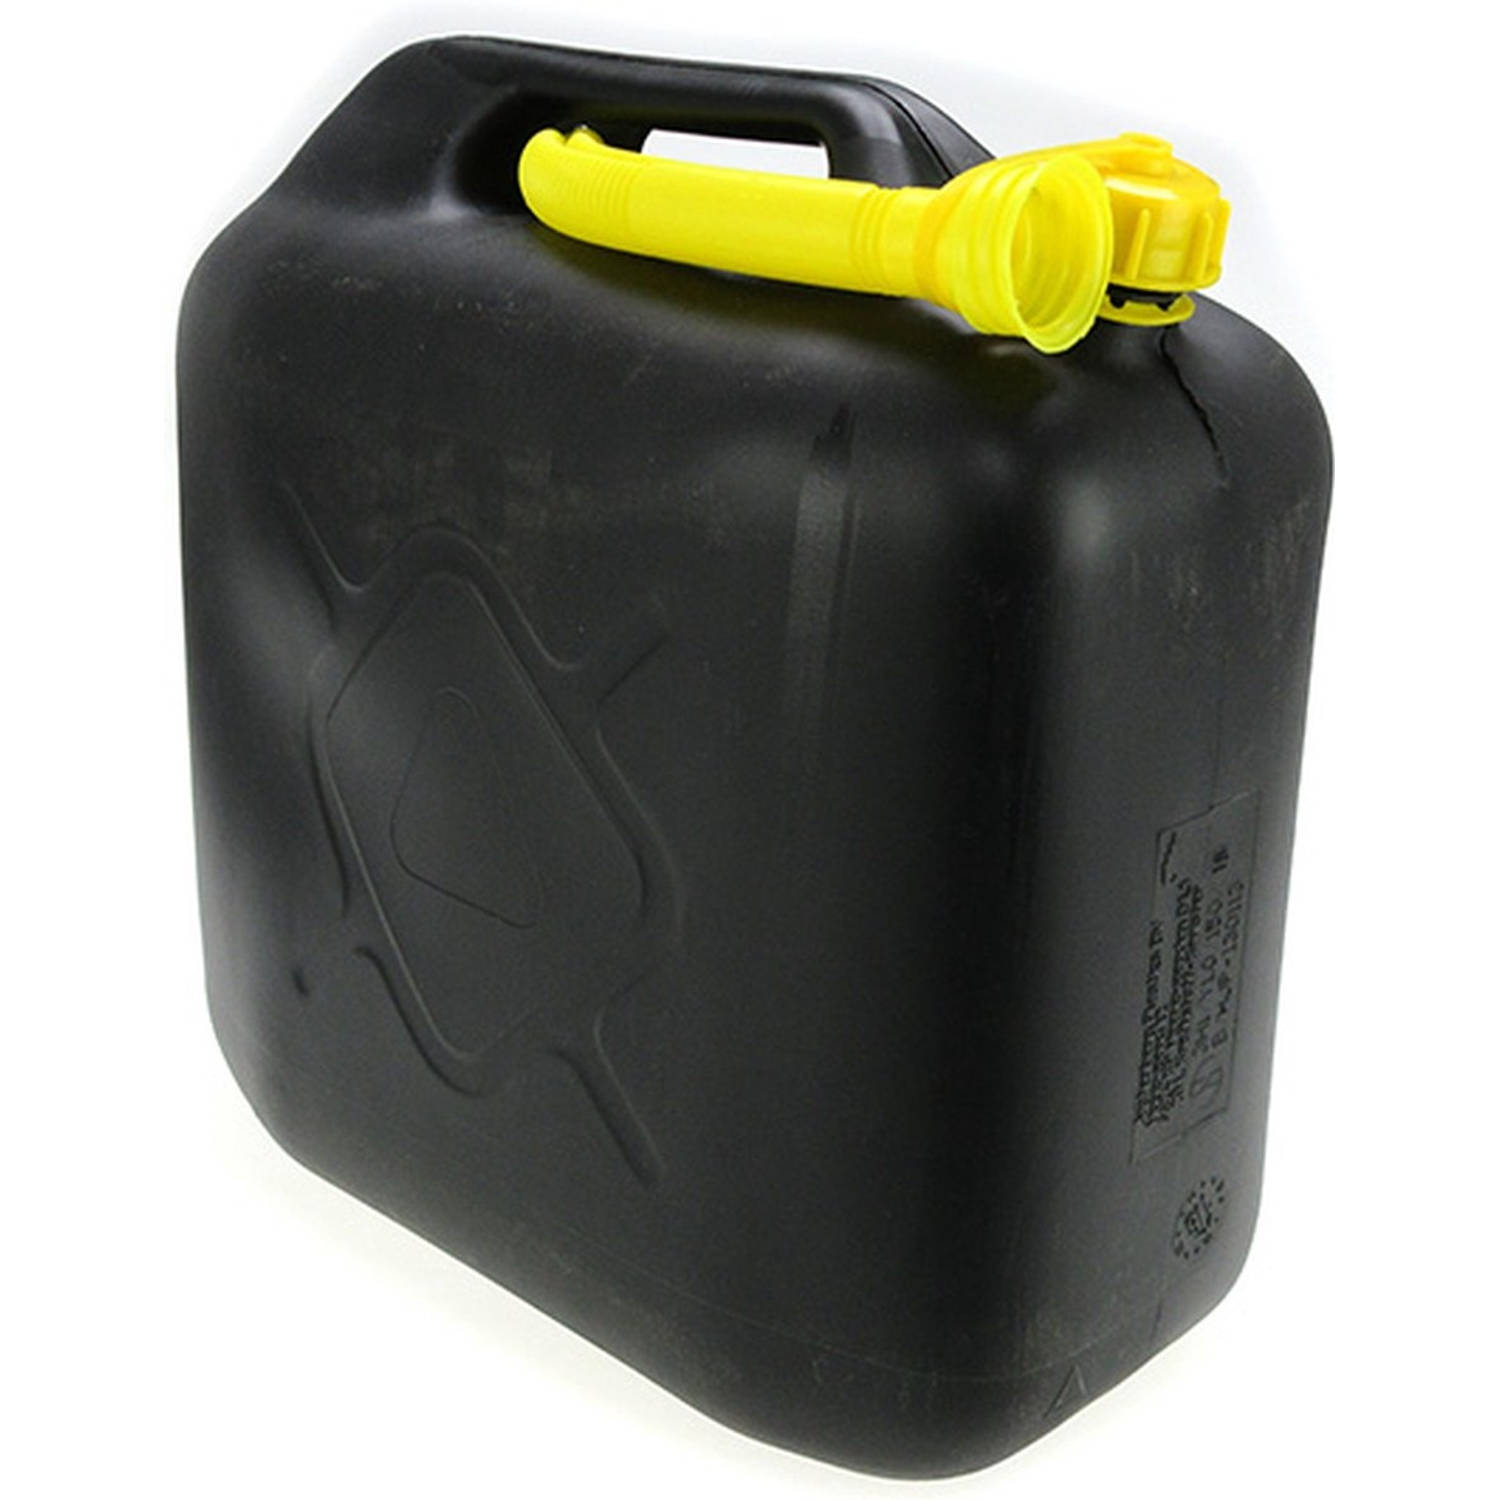 Onbelangrijk Uitstekend Inwoner Jerrycan 20 liter zwart - Jerrycan zwart voor brandstof - 20 liter -  inclusief schenktuit - o.a. benzine / diesel - | Blokker